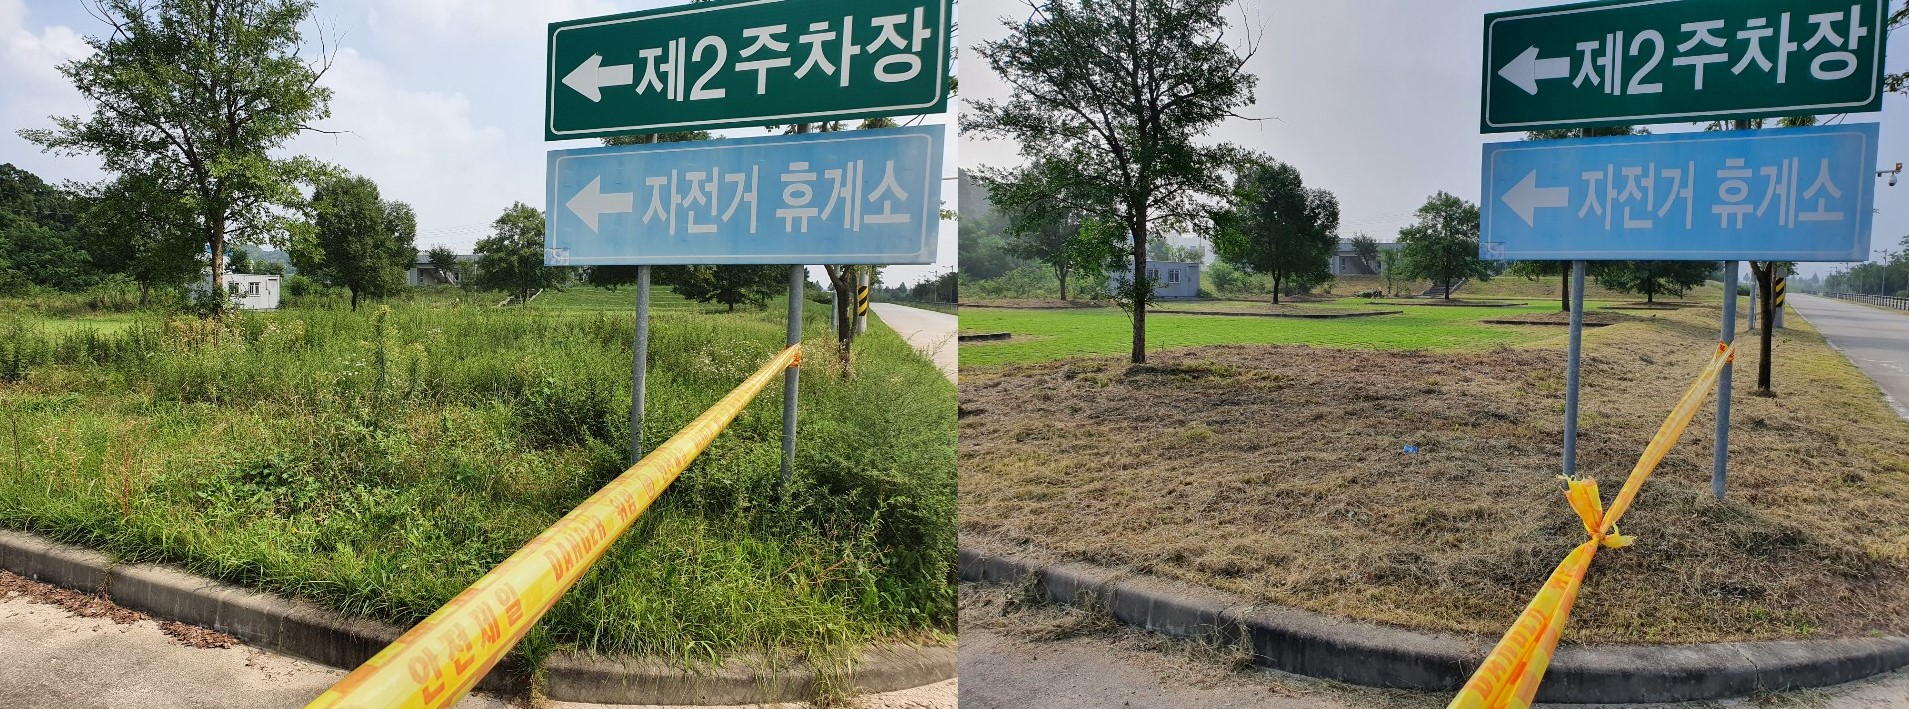 한강유역환경청이 지난 2021년 경기도 양평군 지역의 생태계 교란 식물 제거사업을 추진하기 전(왼쪽)과 후(오른쪽)의 모습2